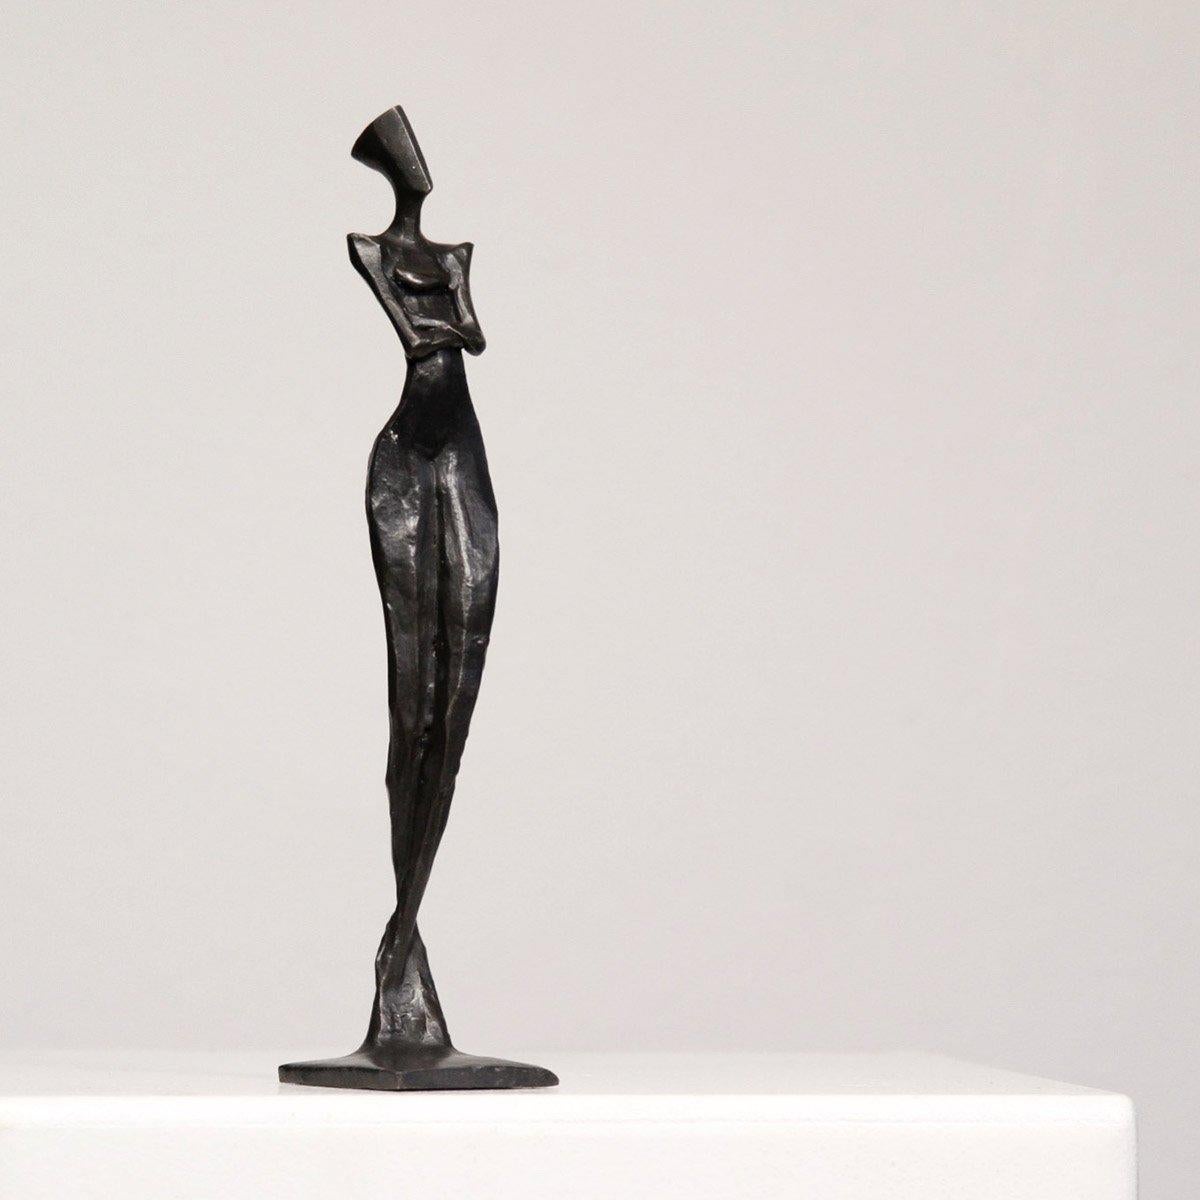 Lena par Nando Kallweit 
Élégante sculpture en bronze d'une figure féminine
Edition de 25

Dimensions : 20cm x 4cm x 5cm